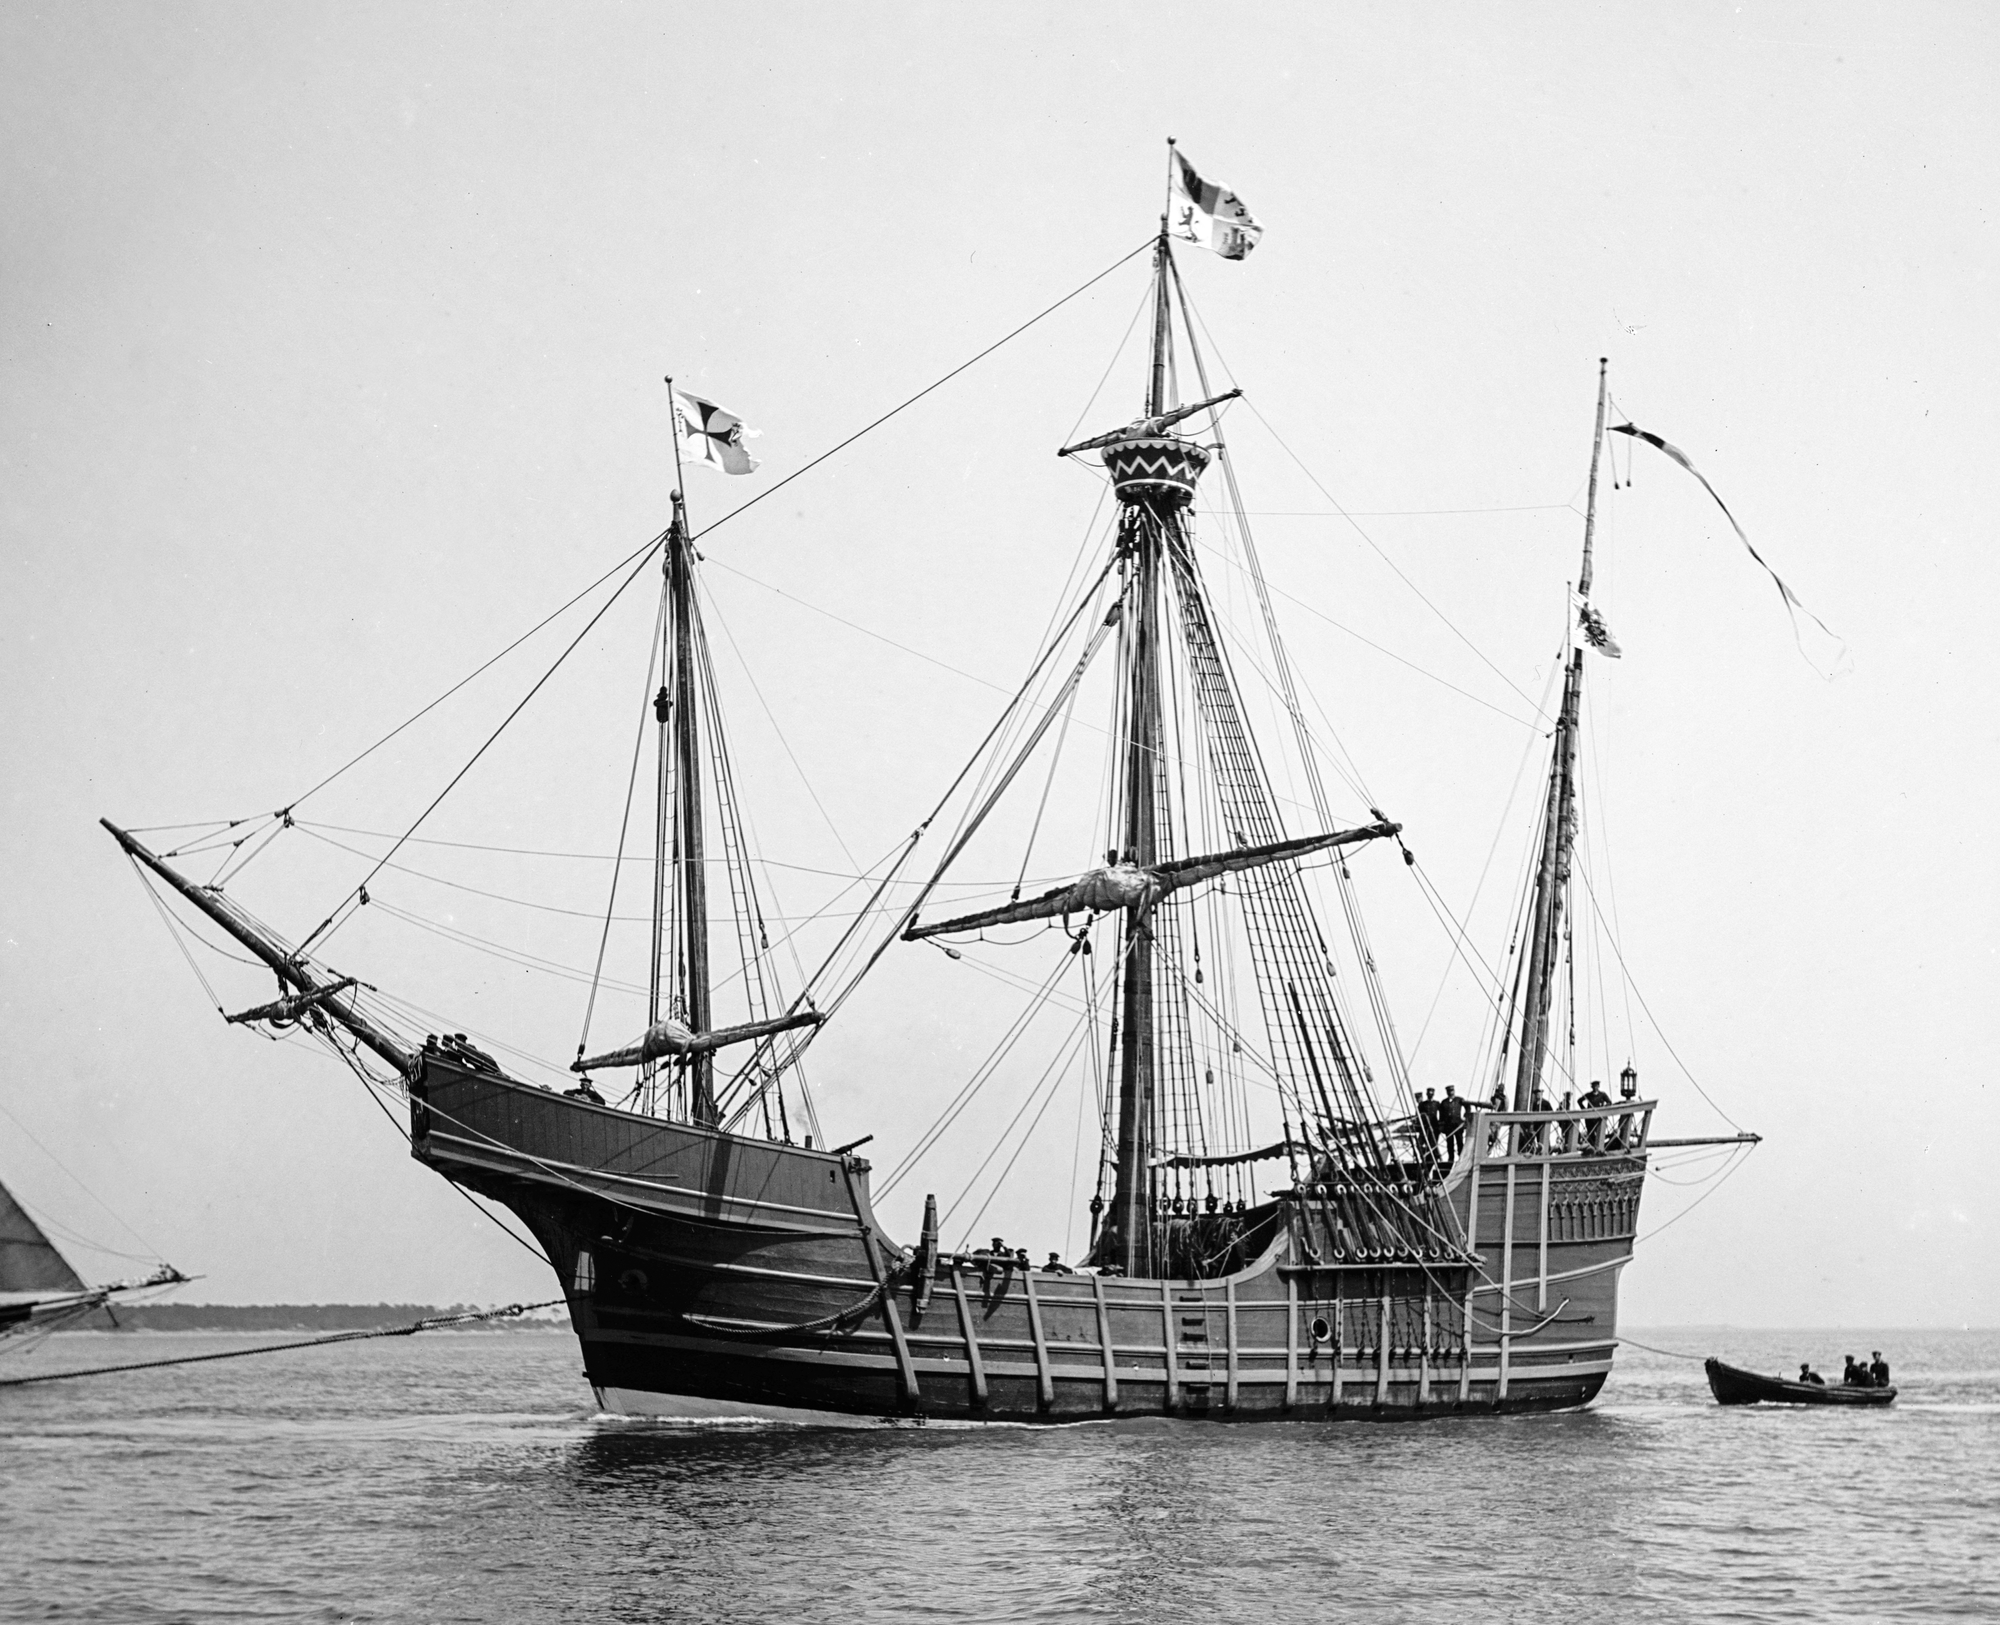 Santa Maria - statek z pierwszej wyprawy. Zdjęcie jest z XV wieku, dlatego jest czarno-białe.